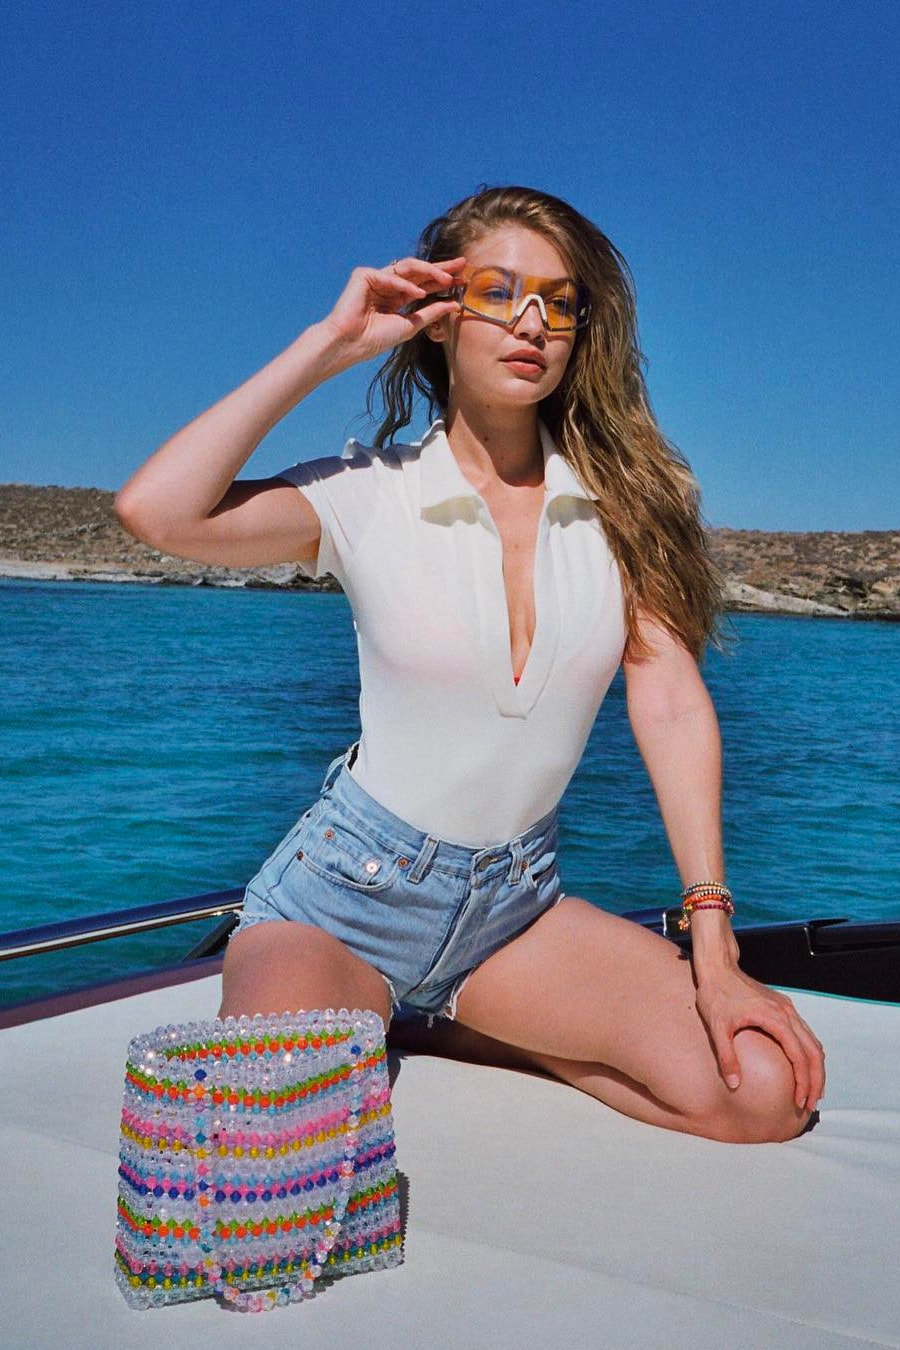 Westward Leaning Sport Sunglasses Gigi Hadid Summer Ocean Sea July 4th 2018